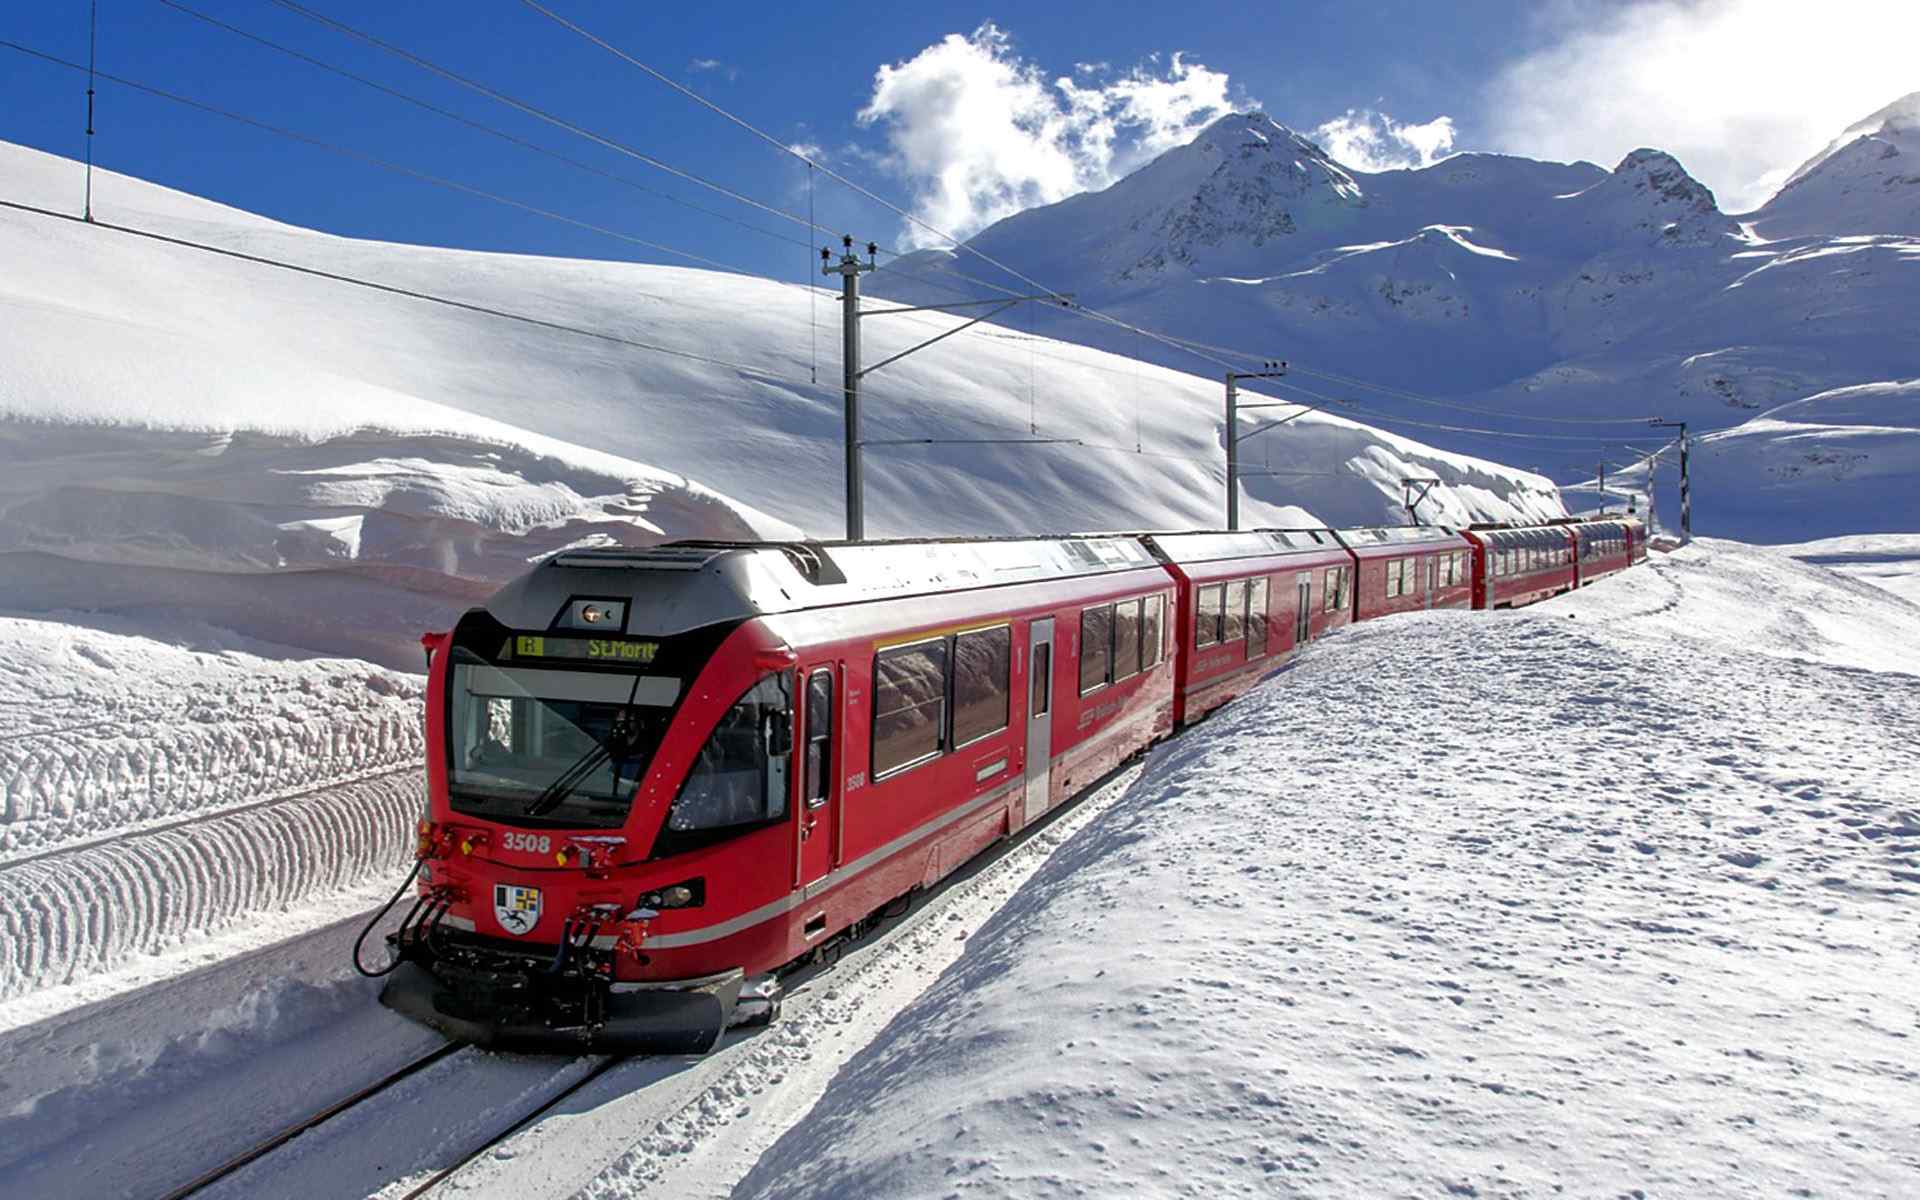 红色火车穿越雪山静谧唯美图片桌面壁纸